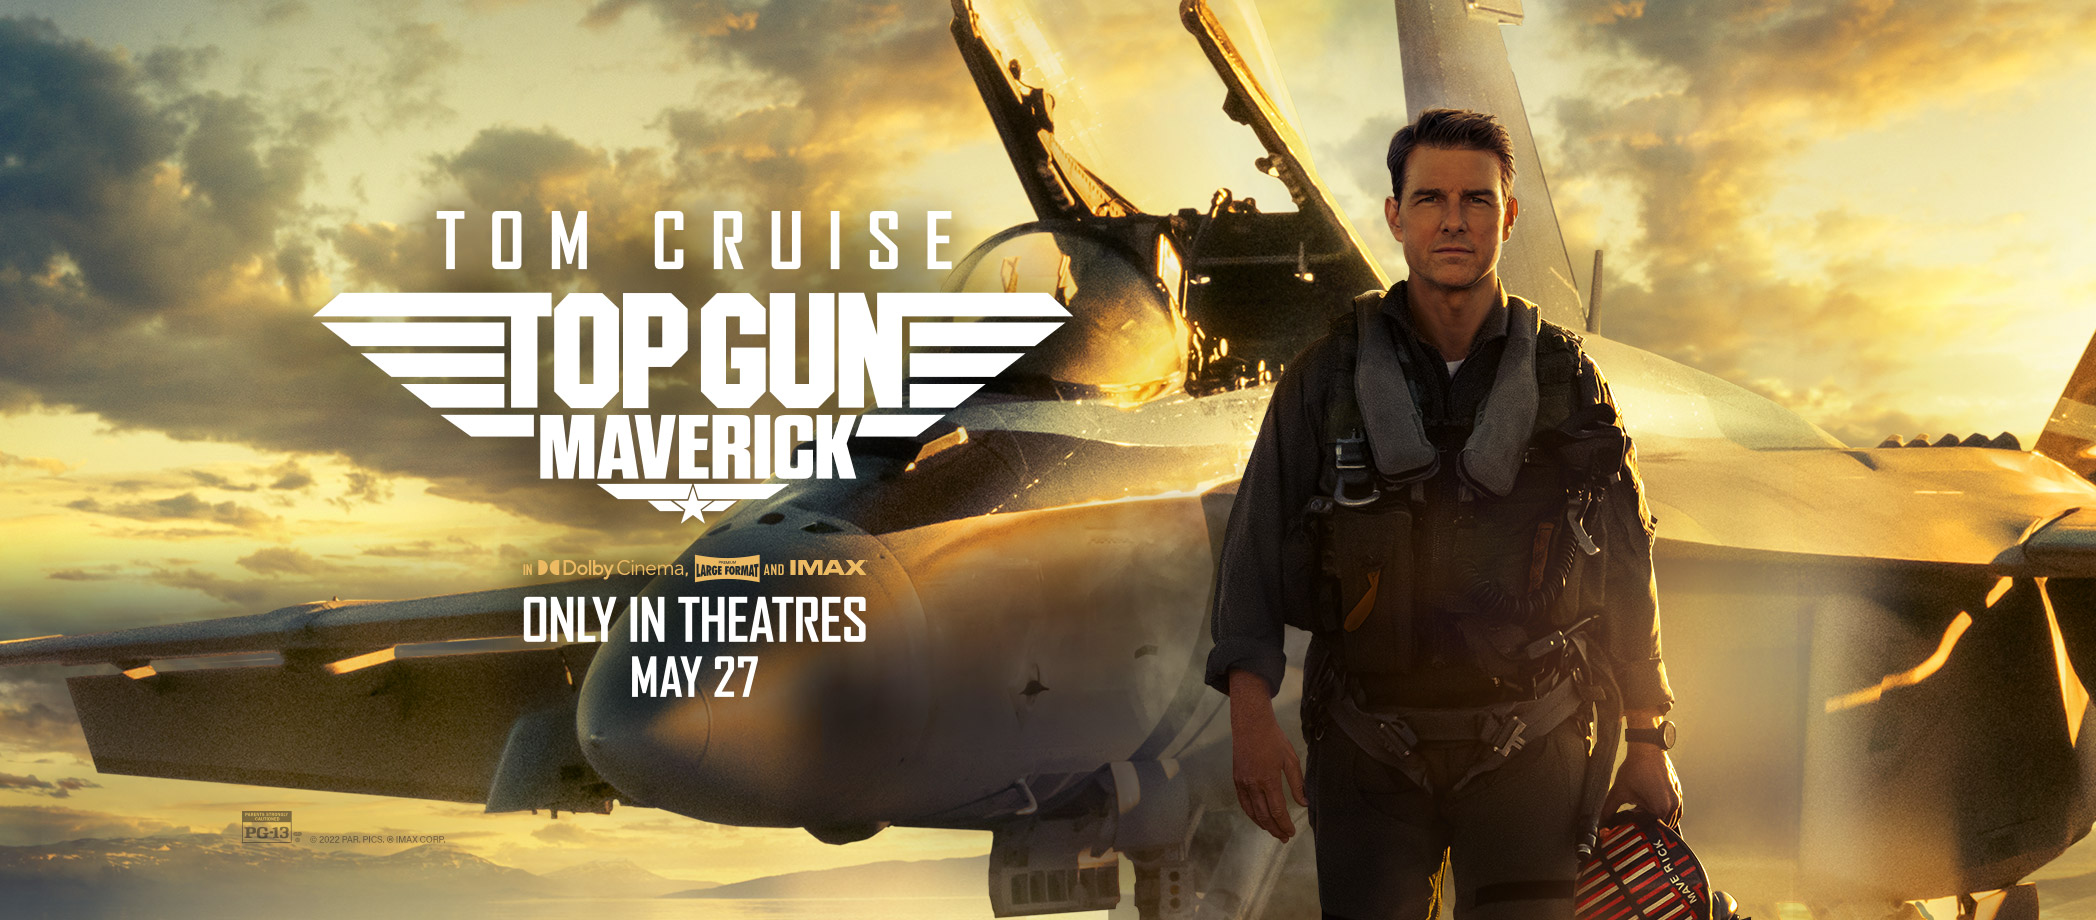 Tom Cruise Back In Danger Zone In 'Top Gun: Maverick'. Cosmic Book News